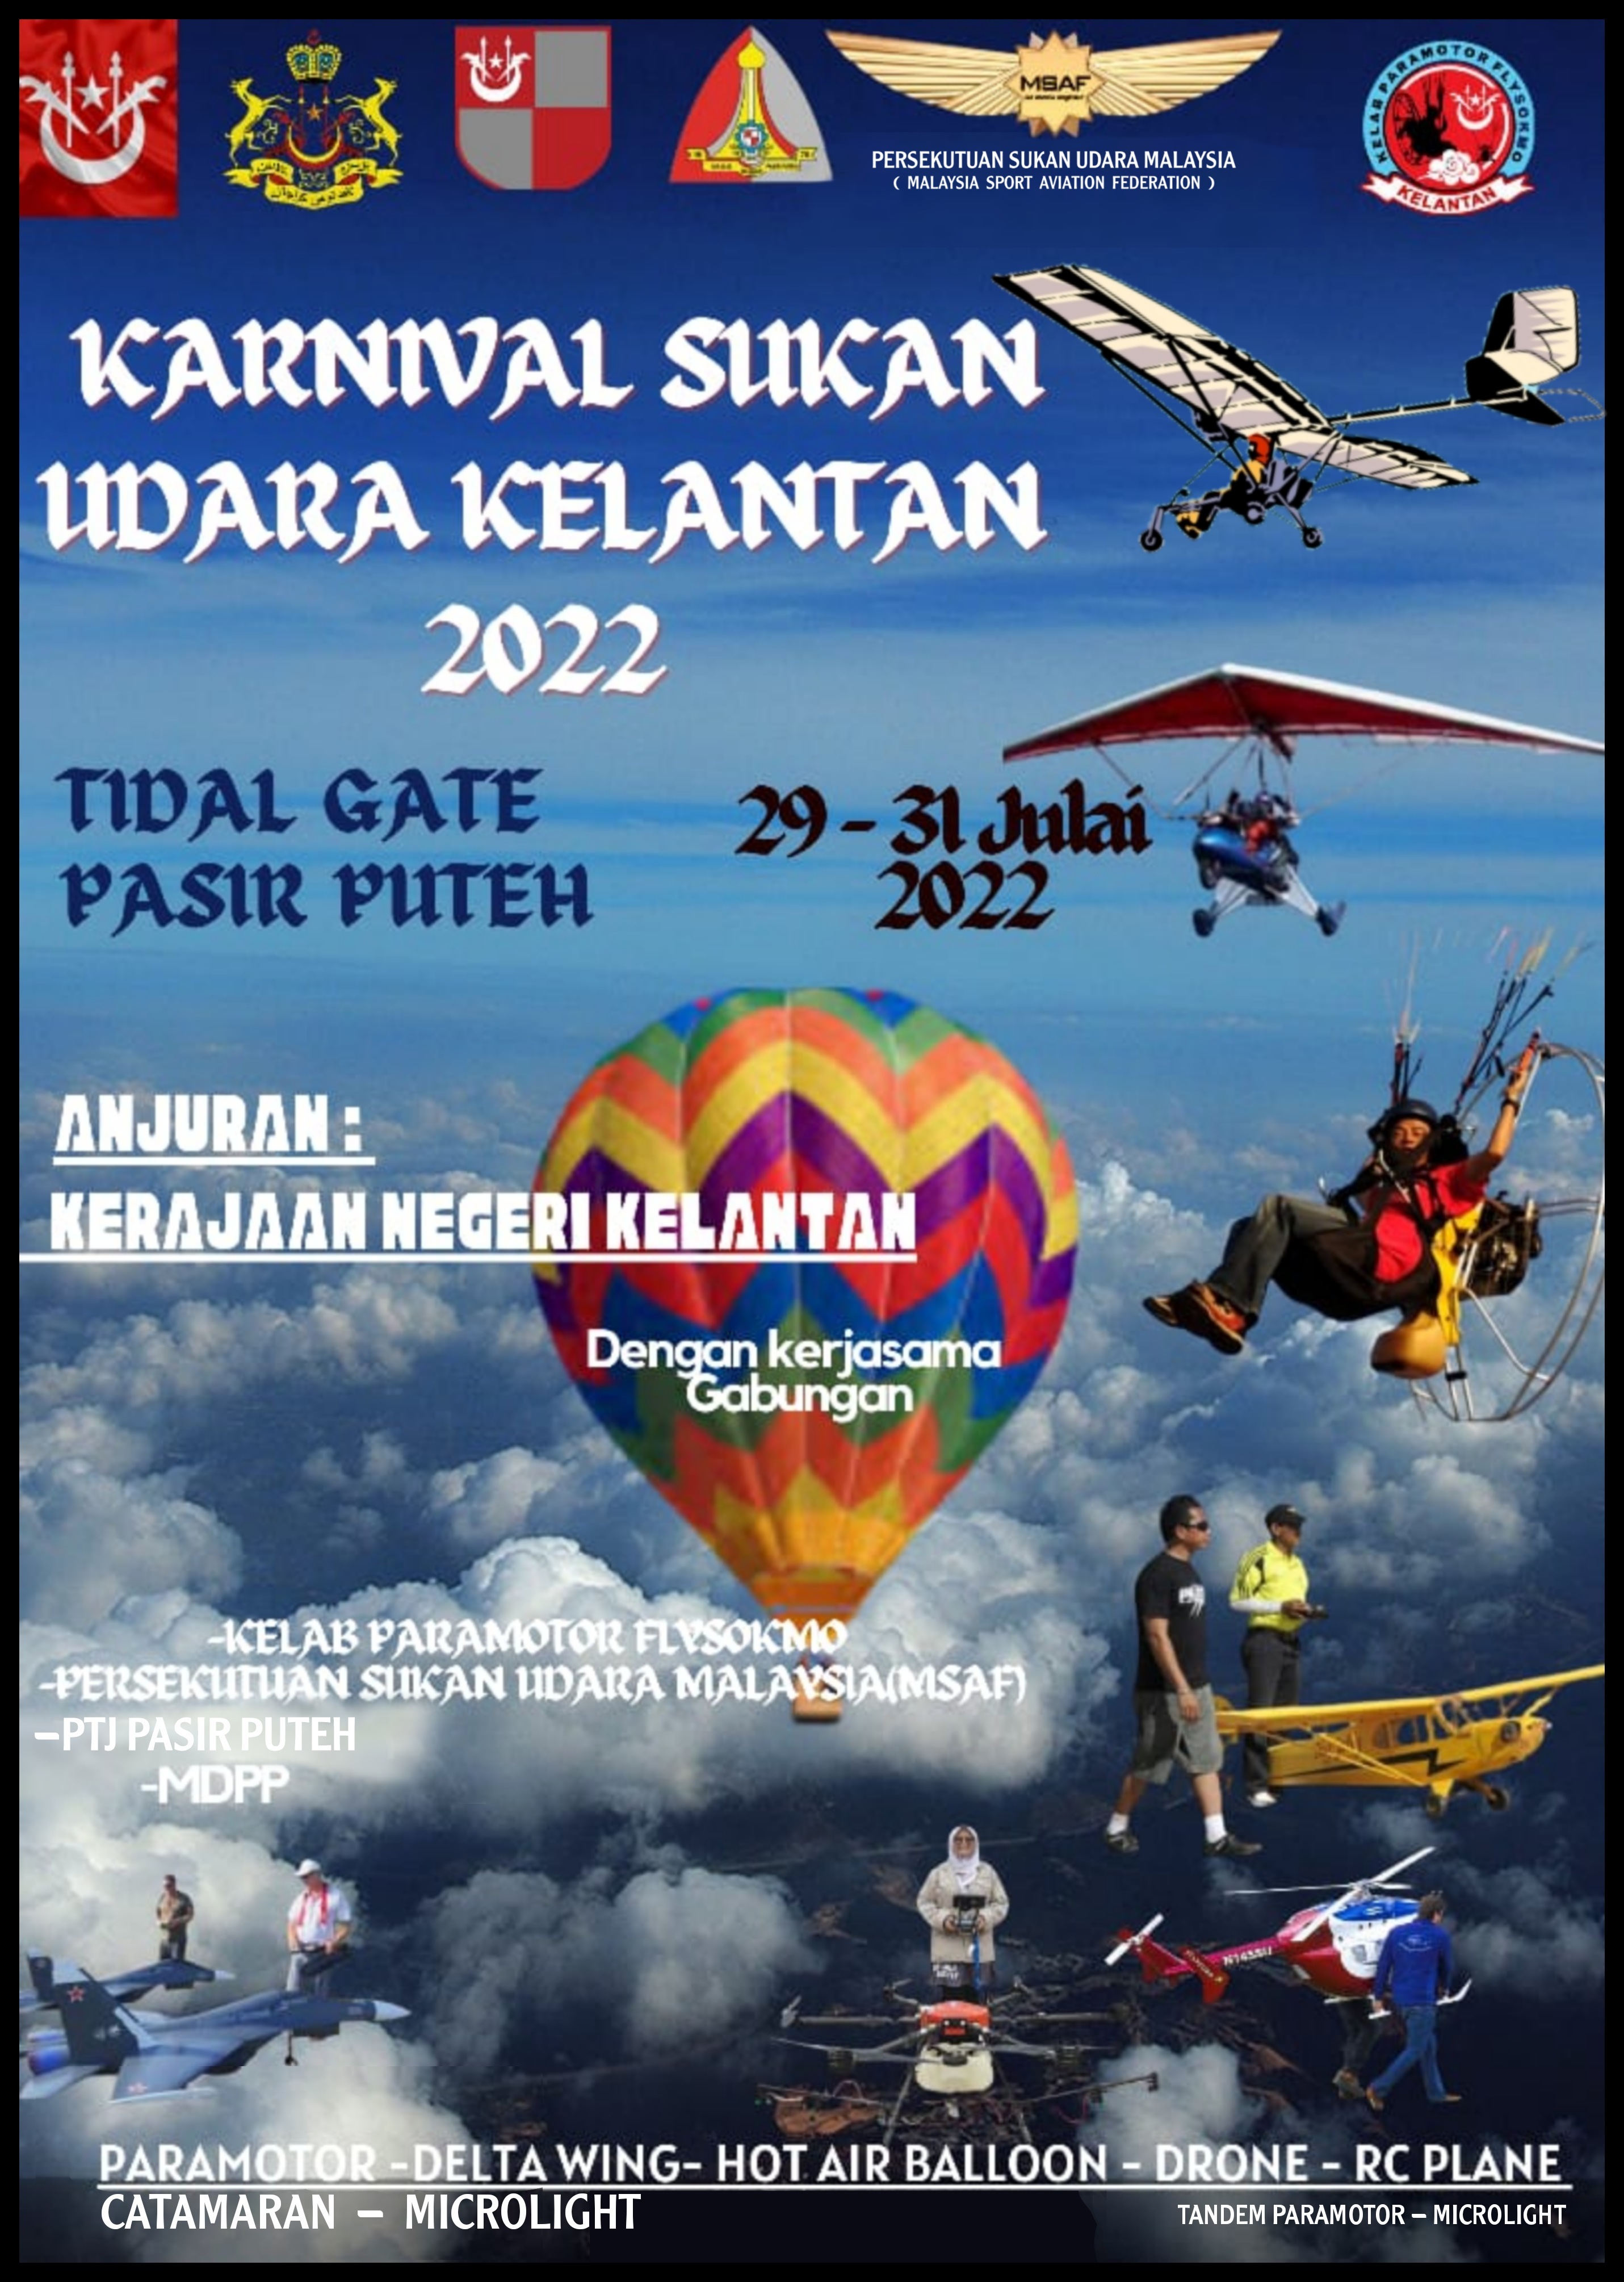 Karnival Sukan Udara Kelantan 2022